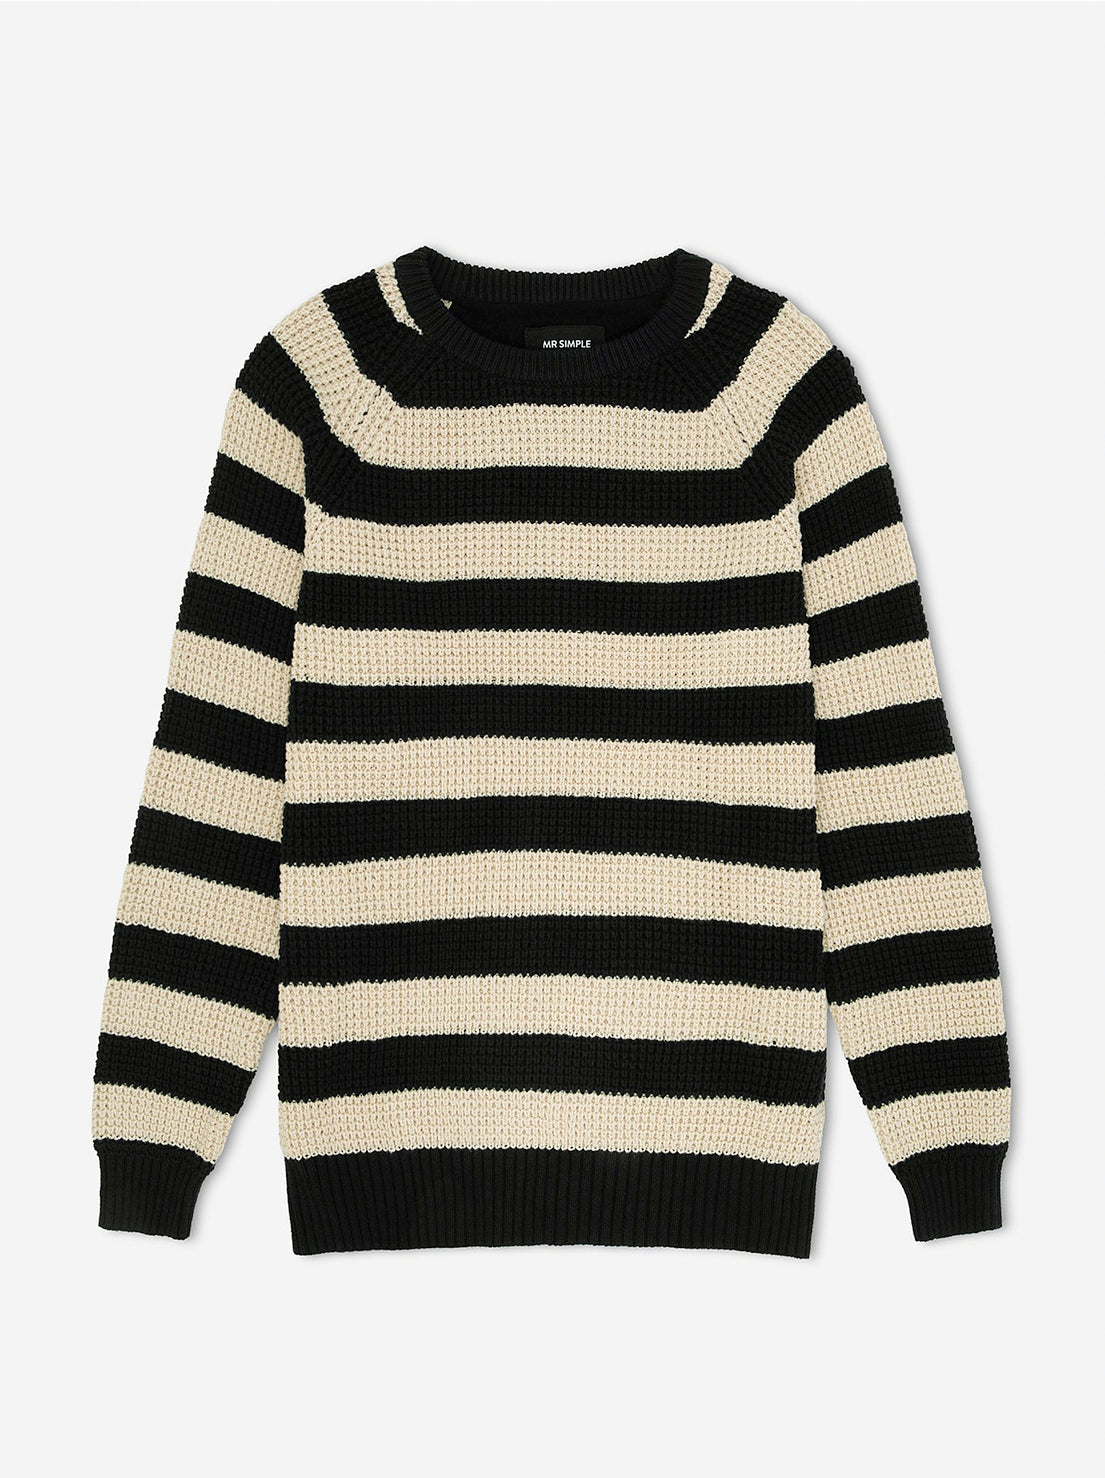 Mr Simple - Stripe Knit - Black / Oatmeal